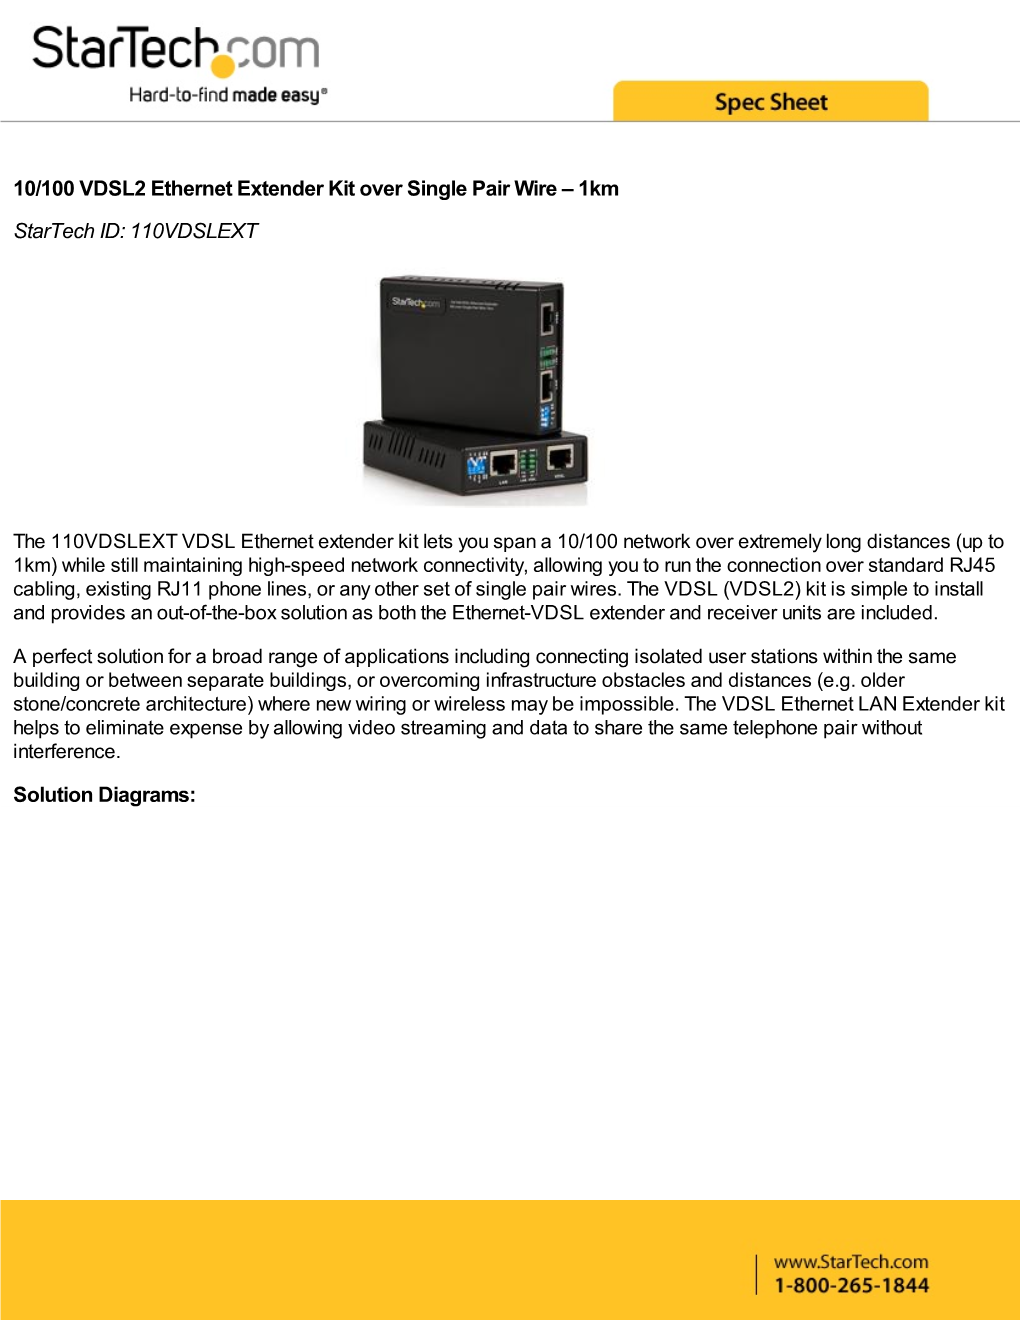 10/100 VDSL2 Ethernet Extender Kit Over Single Pair Wire – 1Km Startech ID: 110VDSLEXT